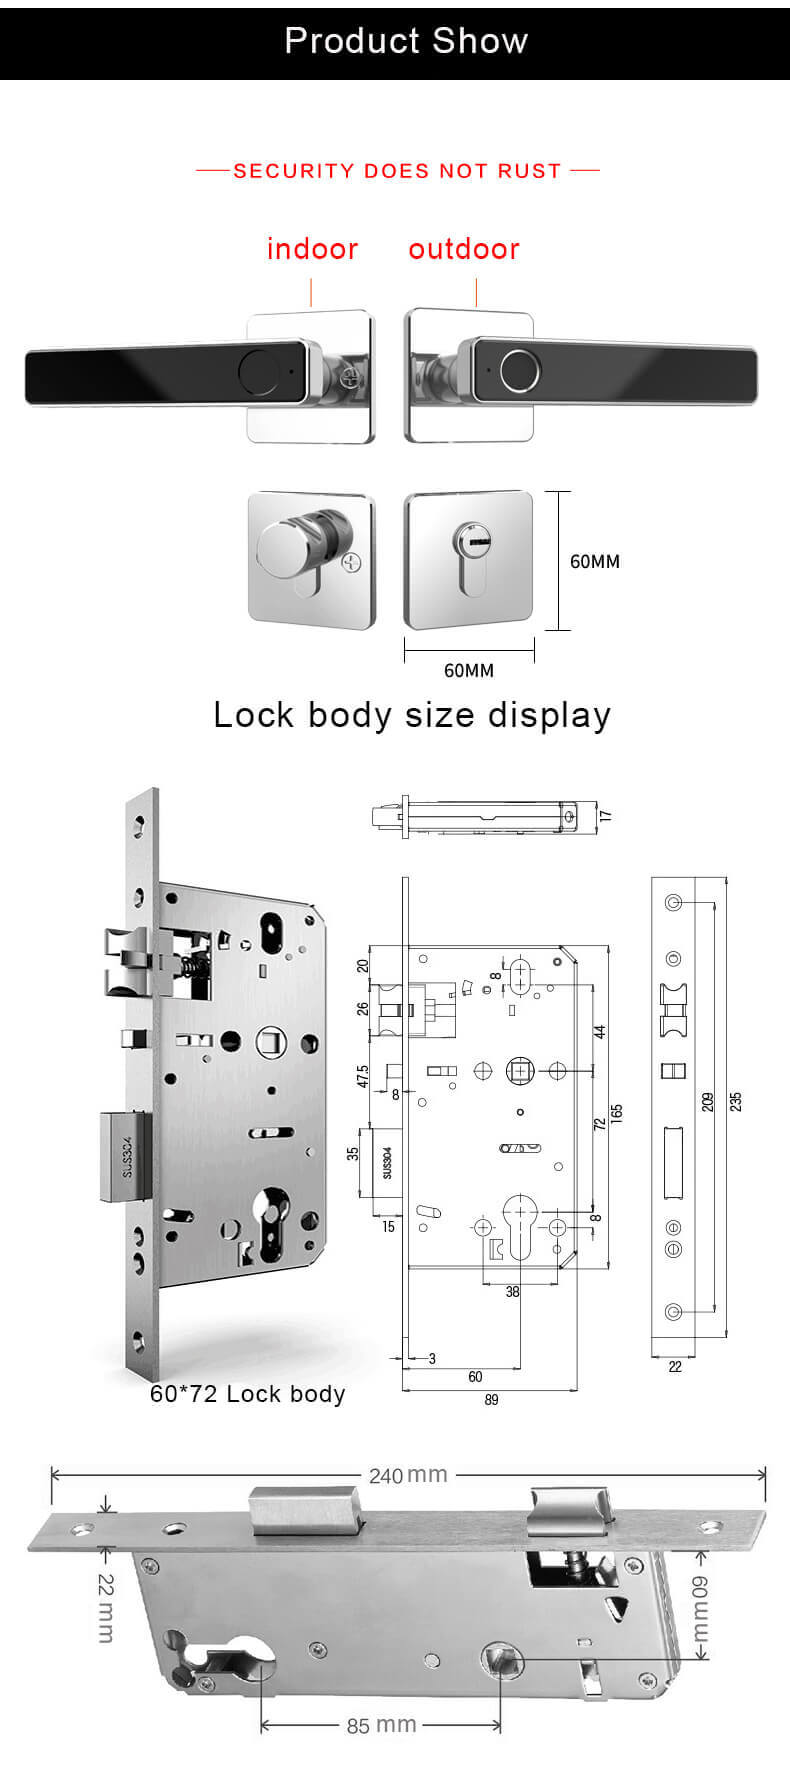 มือจับประตูลายนิ้วมือไบโอเมตริกซ์ใส่ล็อคสำหรับชั่วโมงที่ประตู SL-F2019